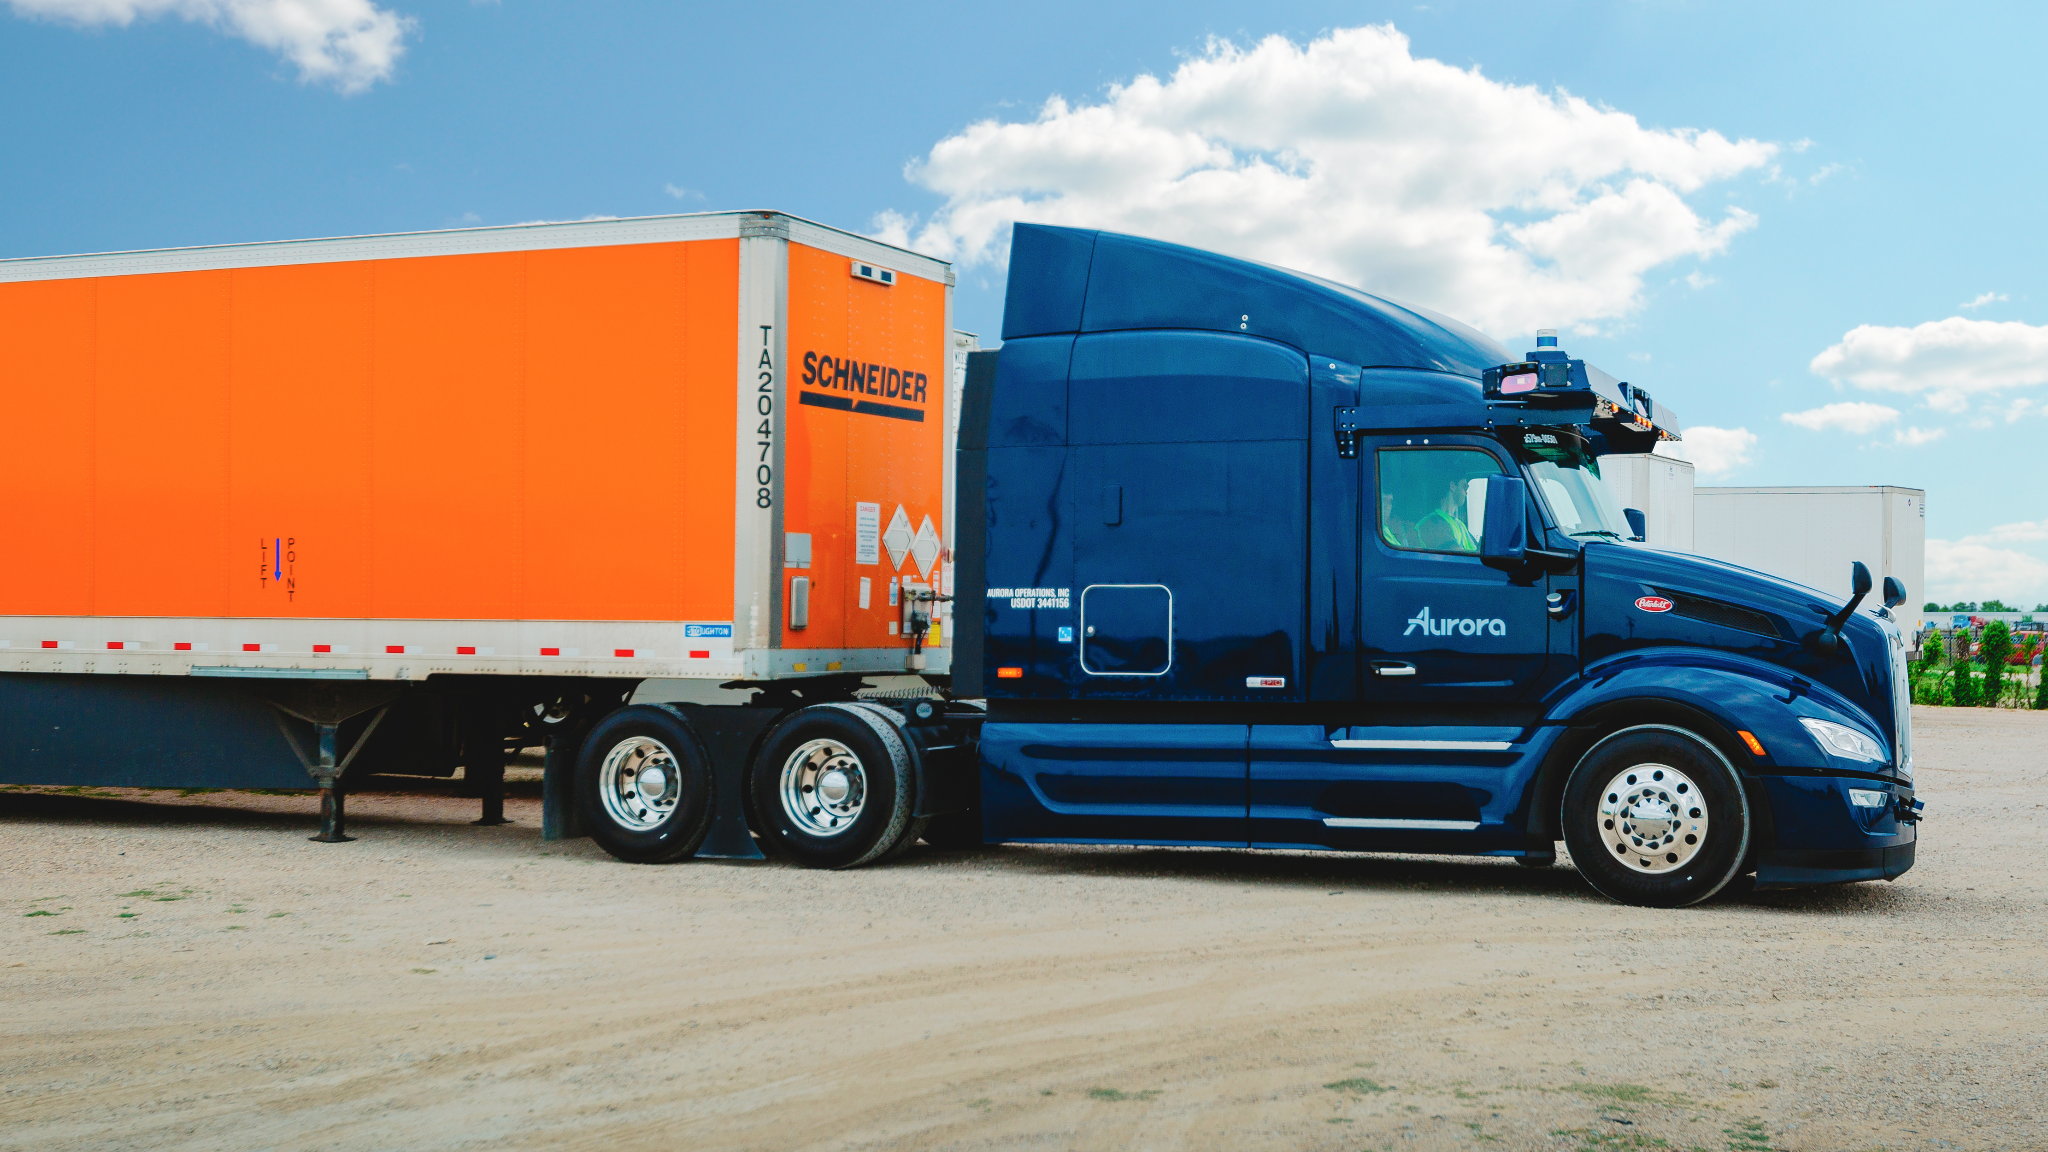 Peterbilt 579 hauls orange Schneider trailer